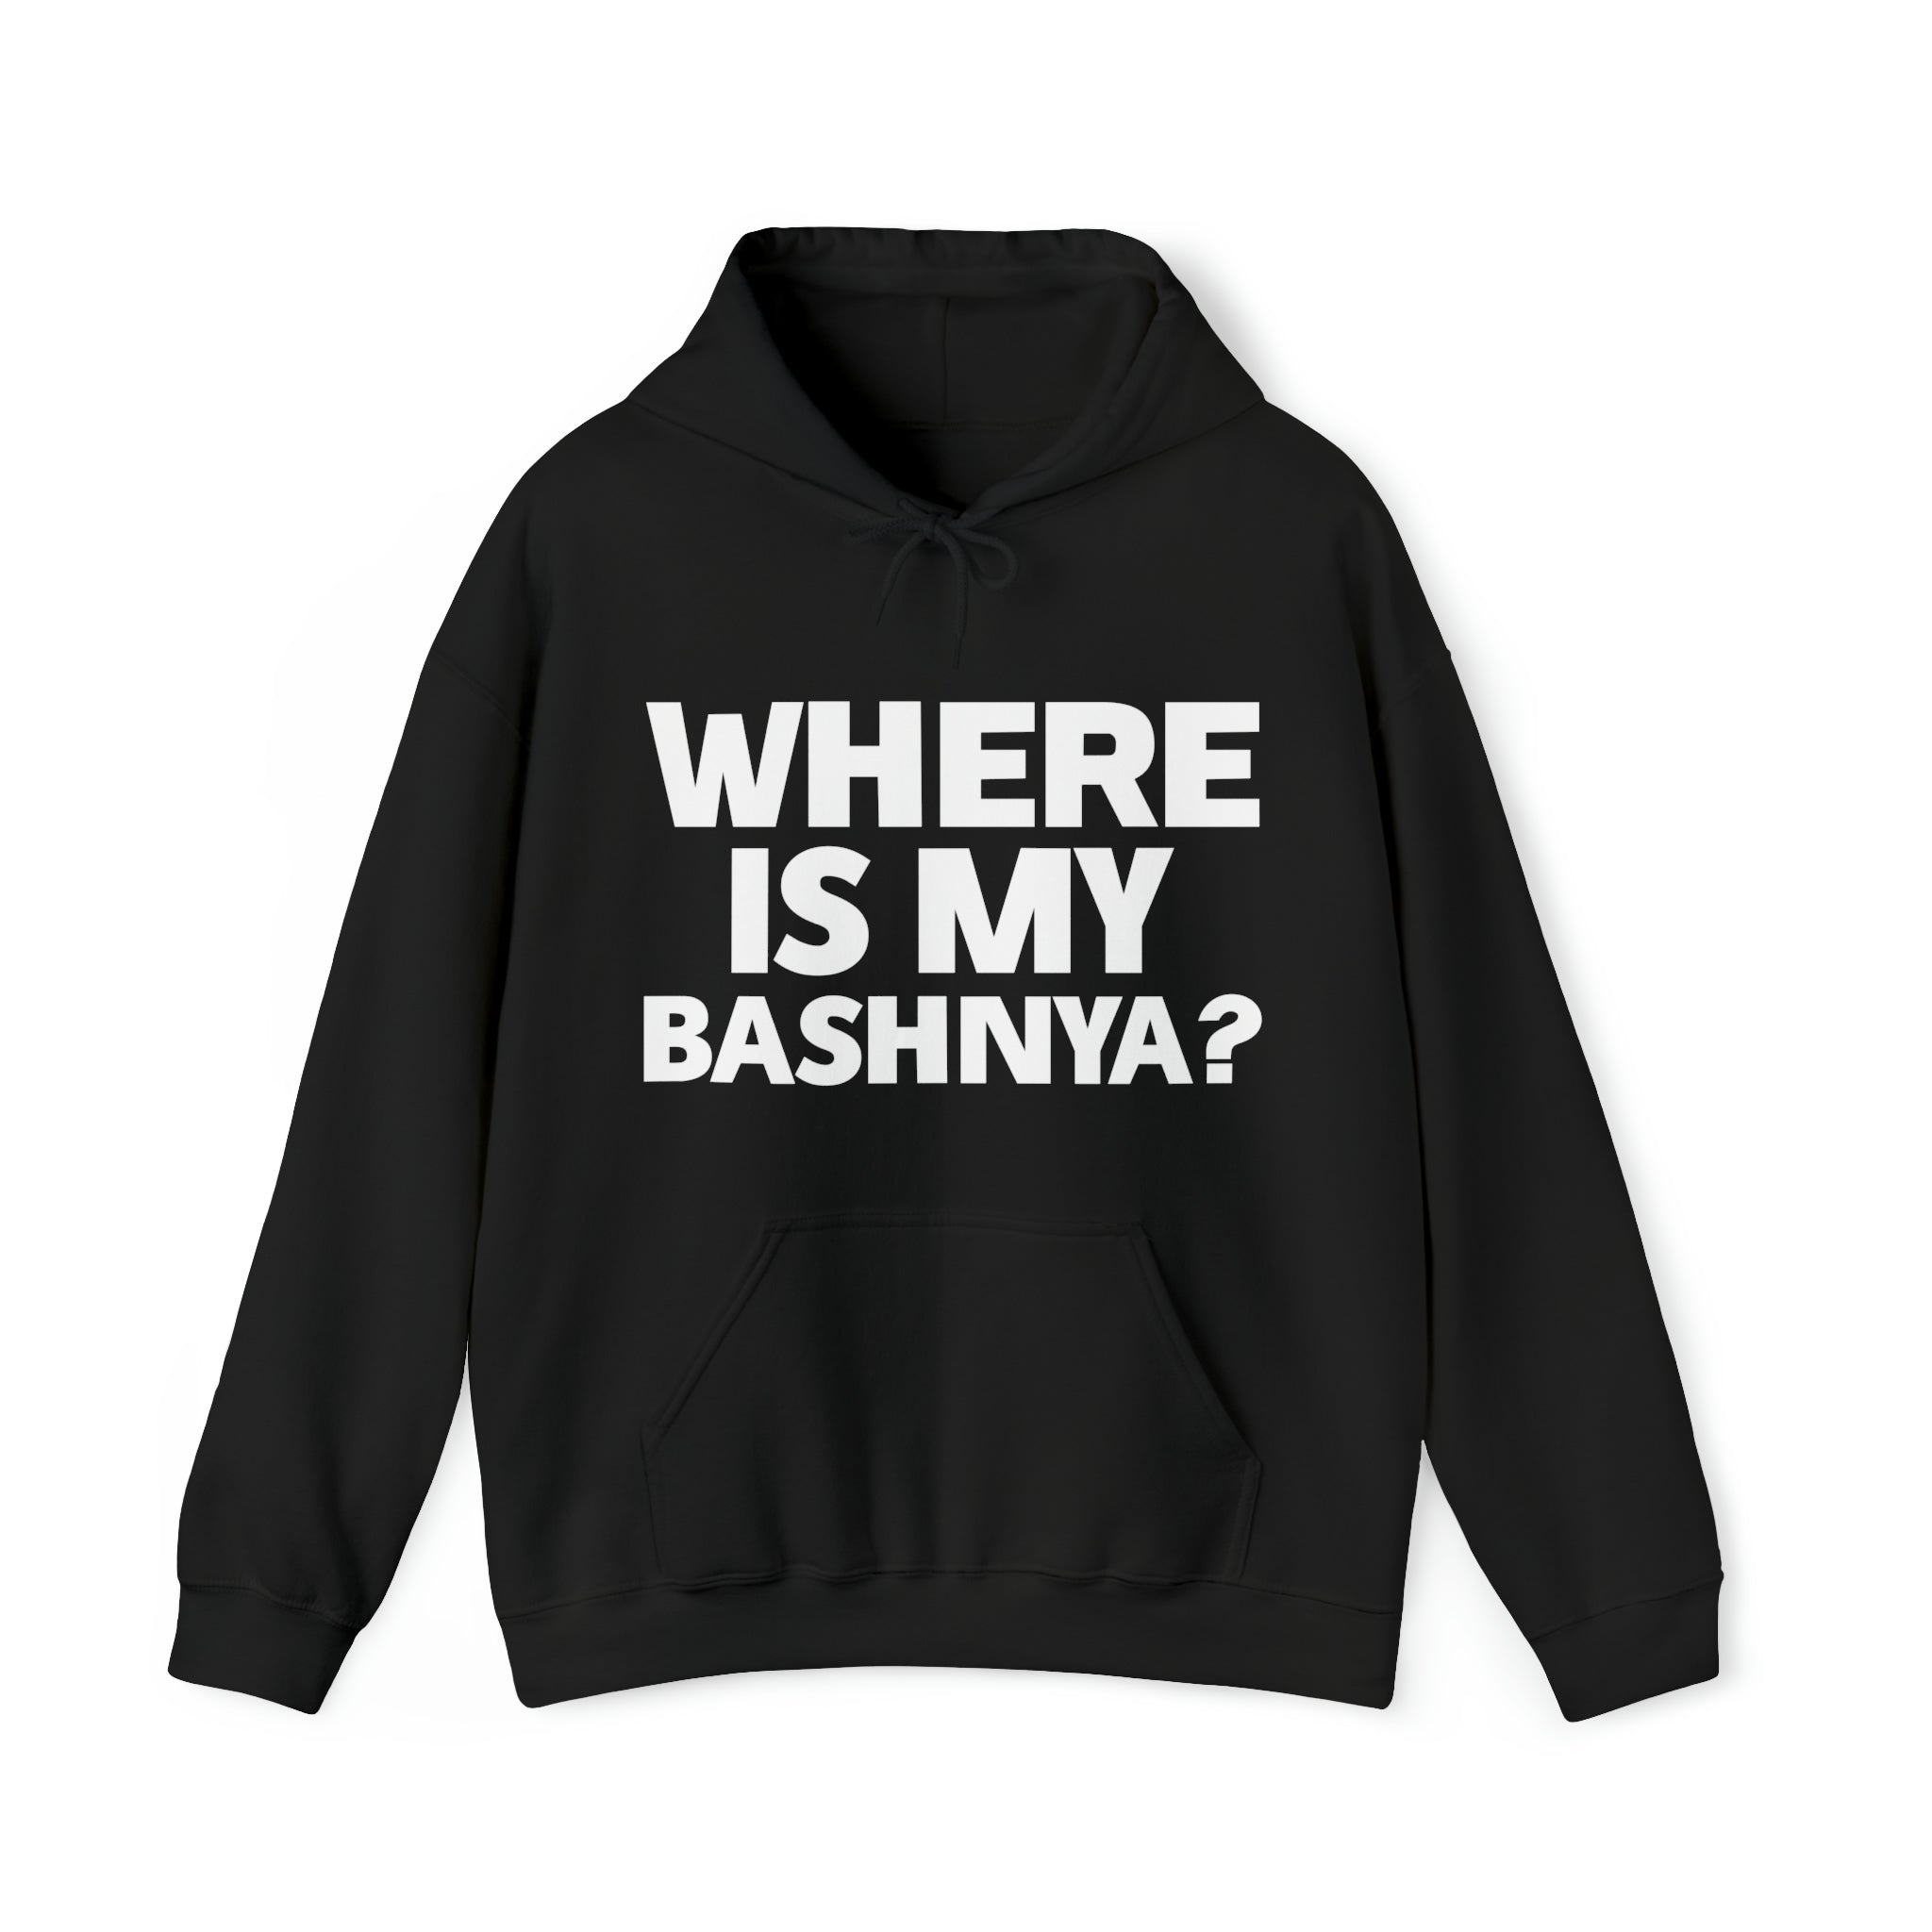 Where is My Bashnya? Sweatshirt